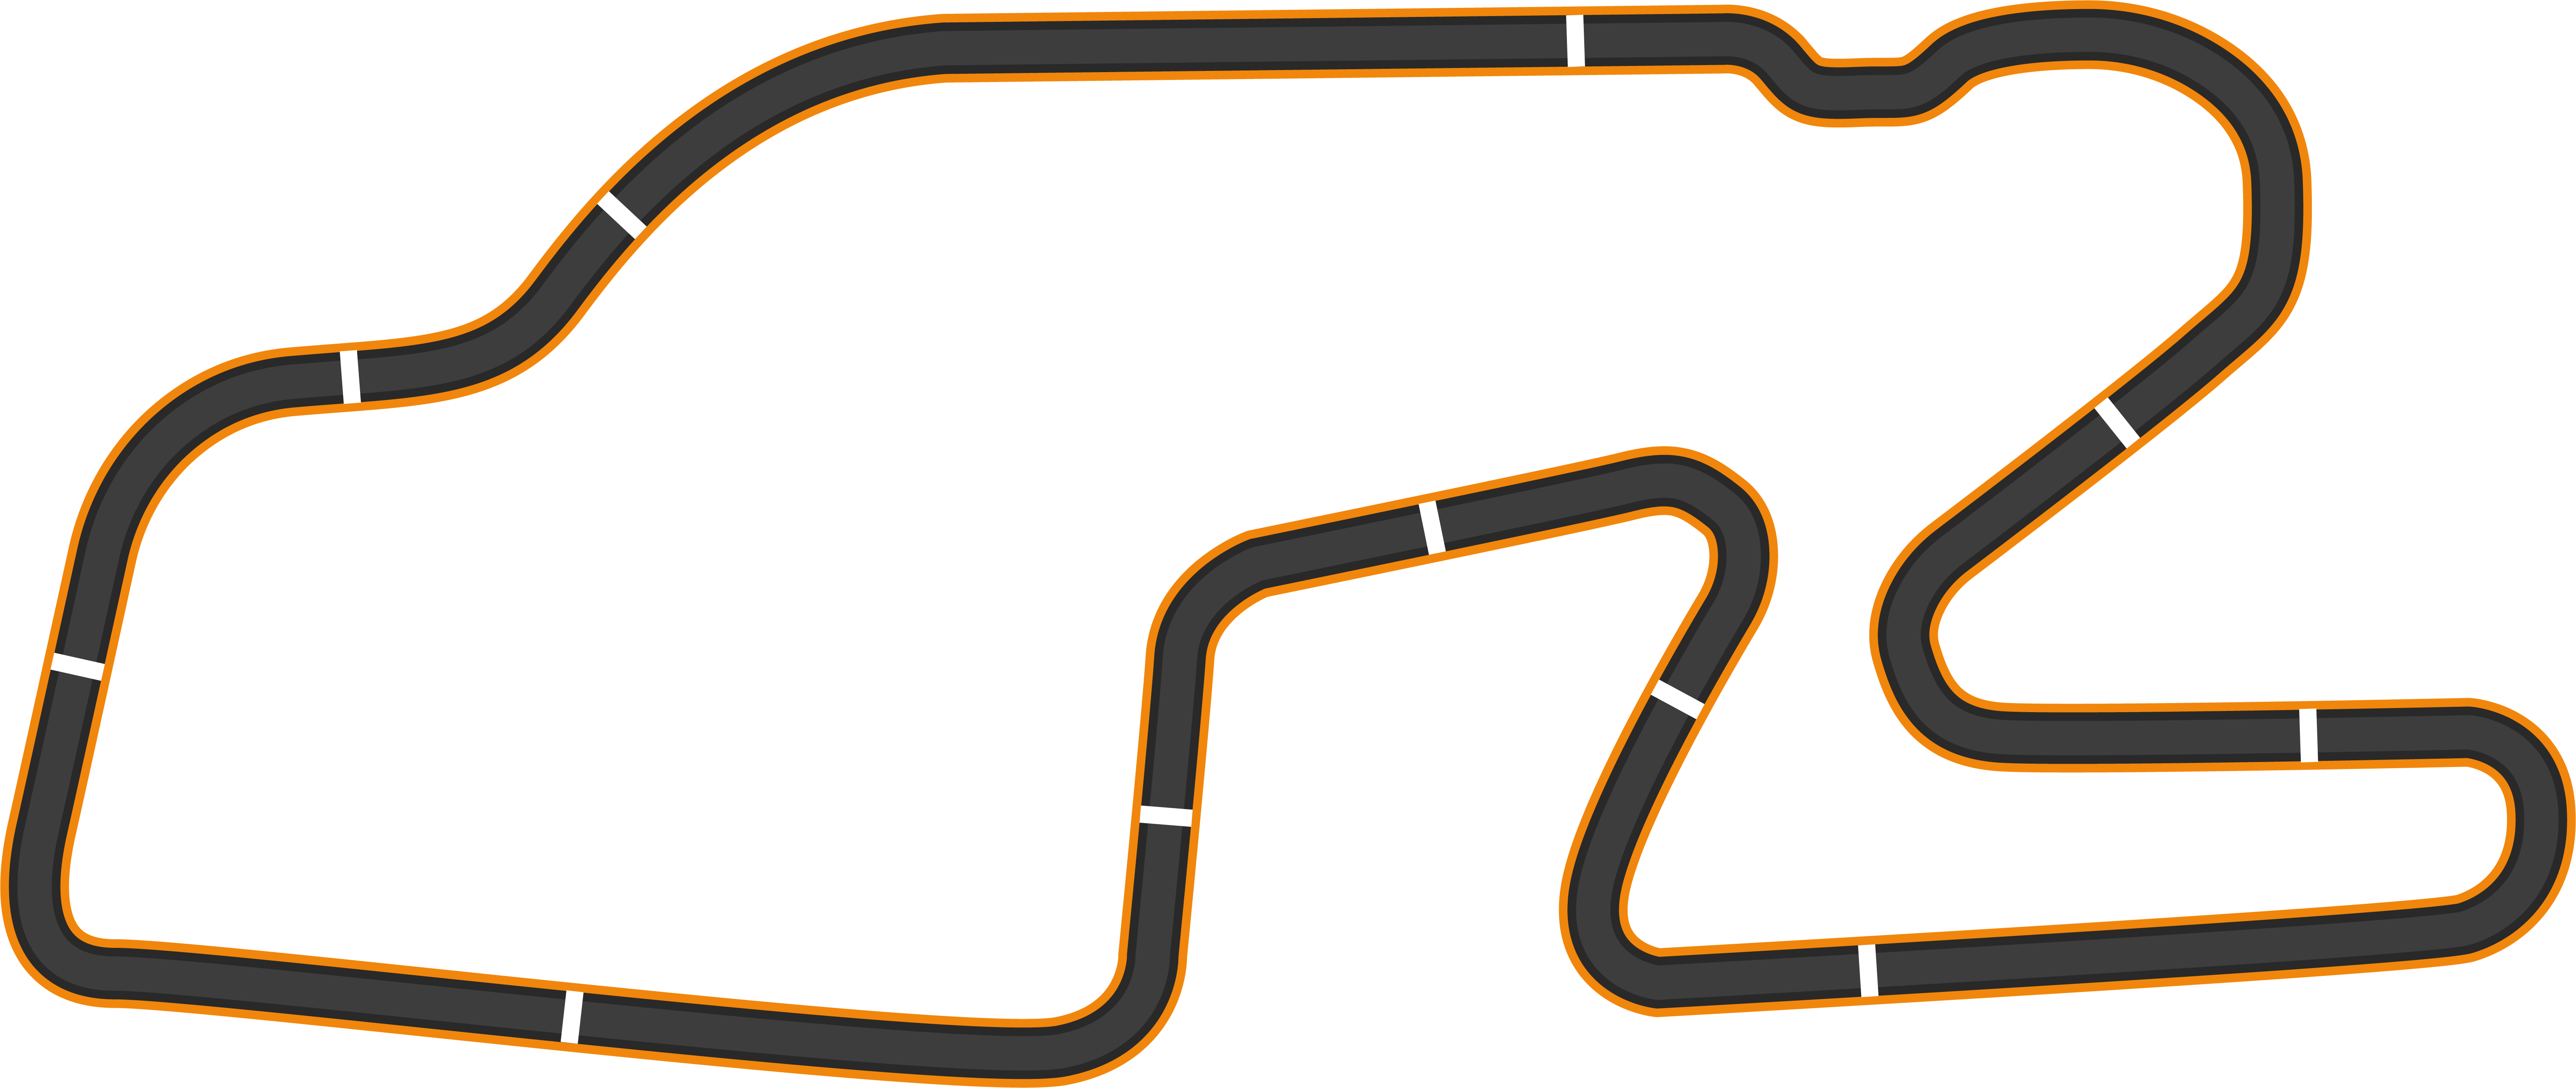 Watkins Glen for Assetto Corsa